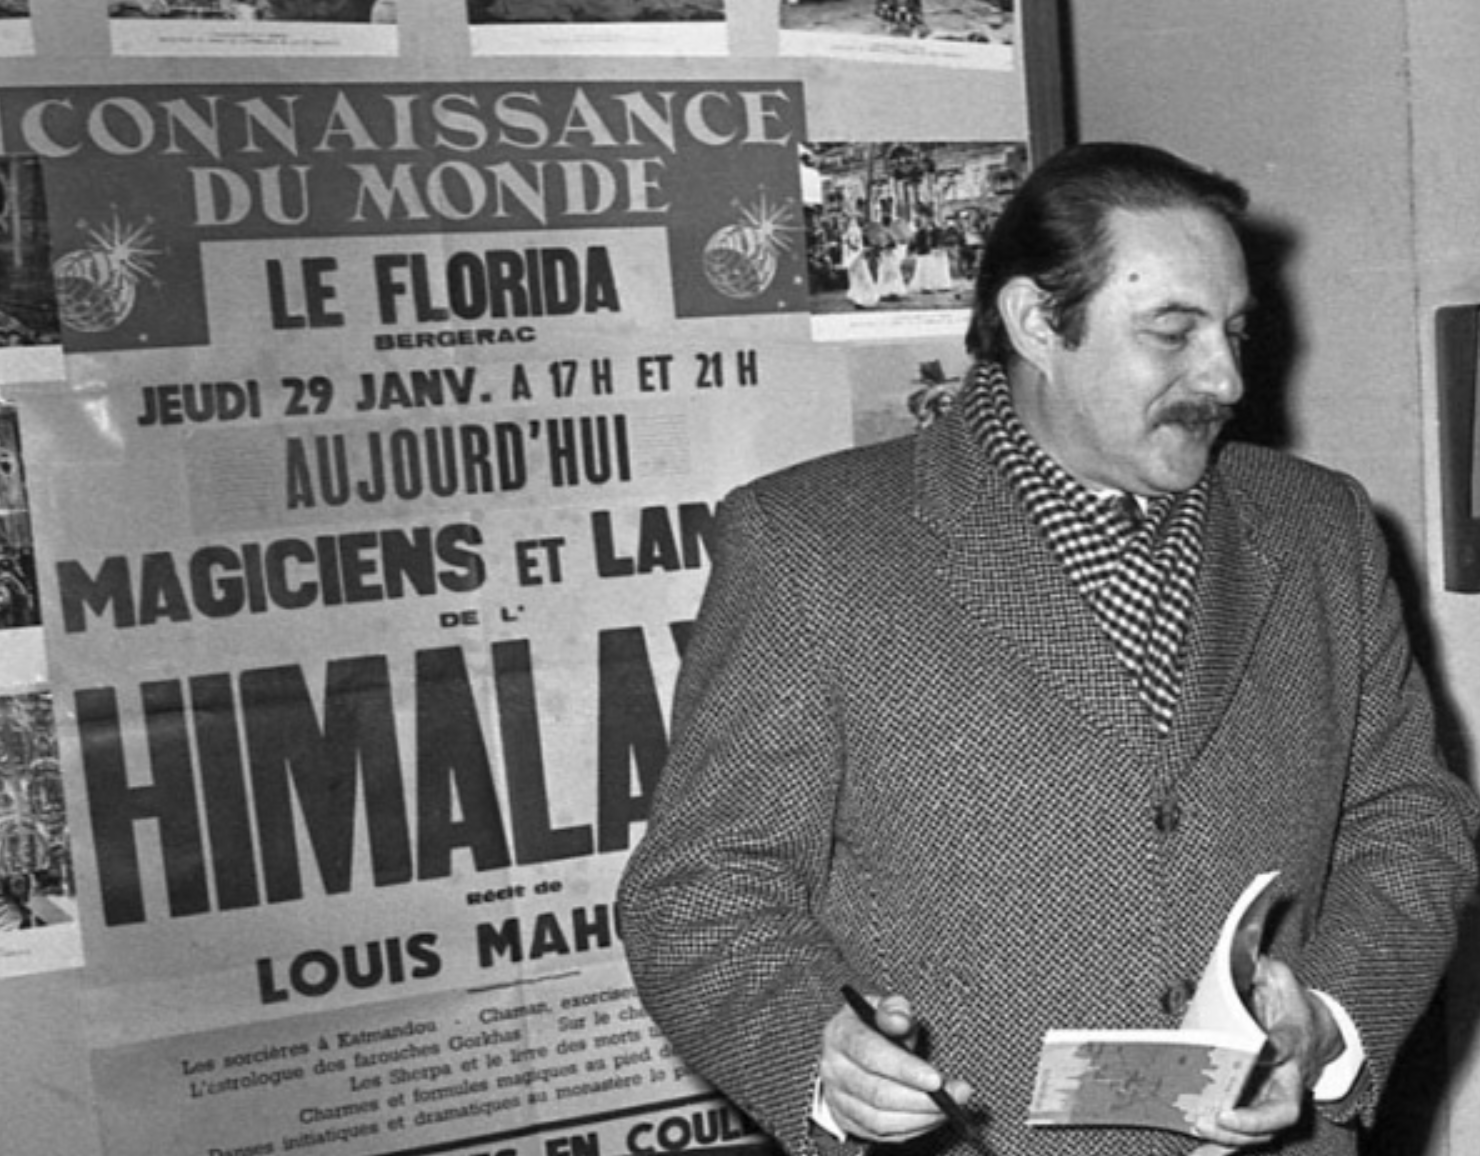 CONNAISSANCE DU MONDE SUR L'HIMALAYA PAR LOUIS MAHUZIER AU FLORIDA BERGERAC 29 JANVIER 1976